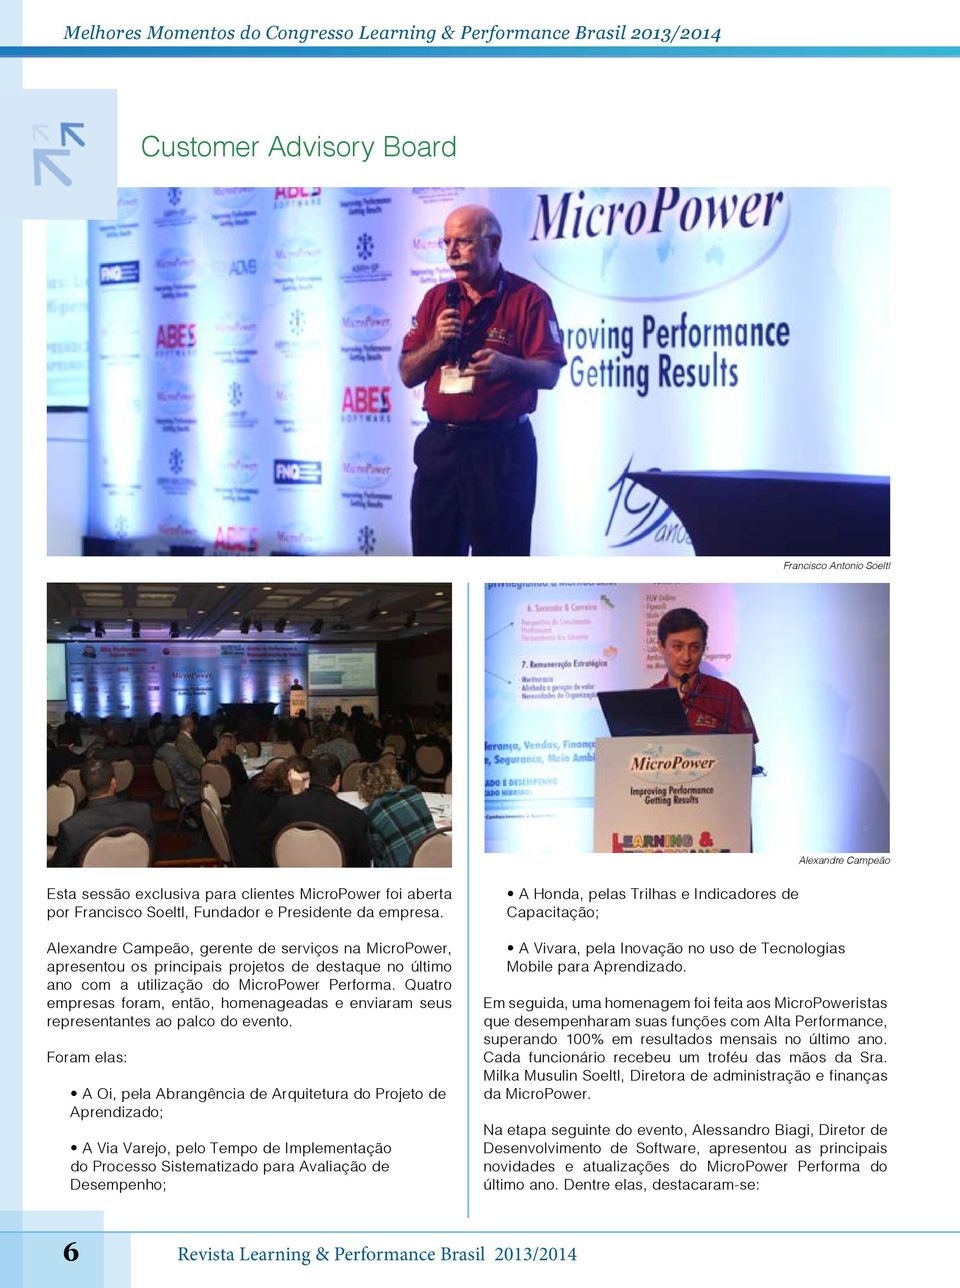 Alexandre Campeão, gerente de serviços na MicroPower, apresentou os principais projetos de destaque no último ano com a utilização do MicroPower Performa.